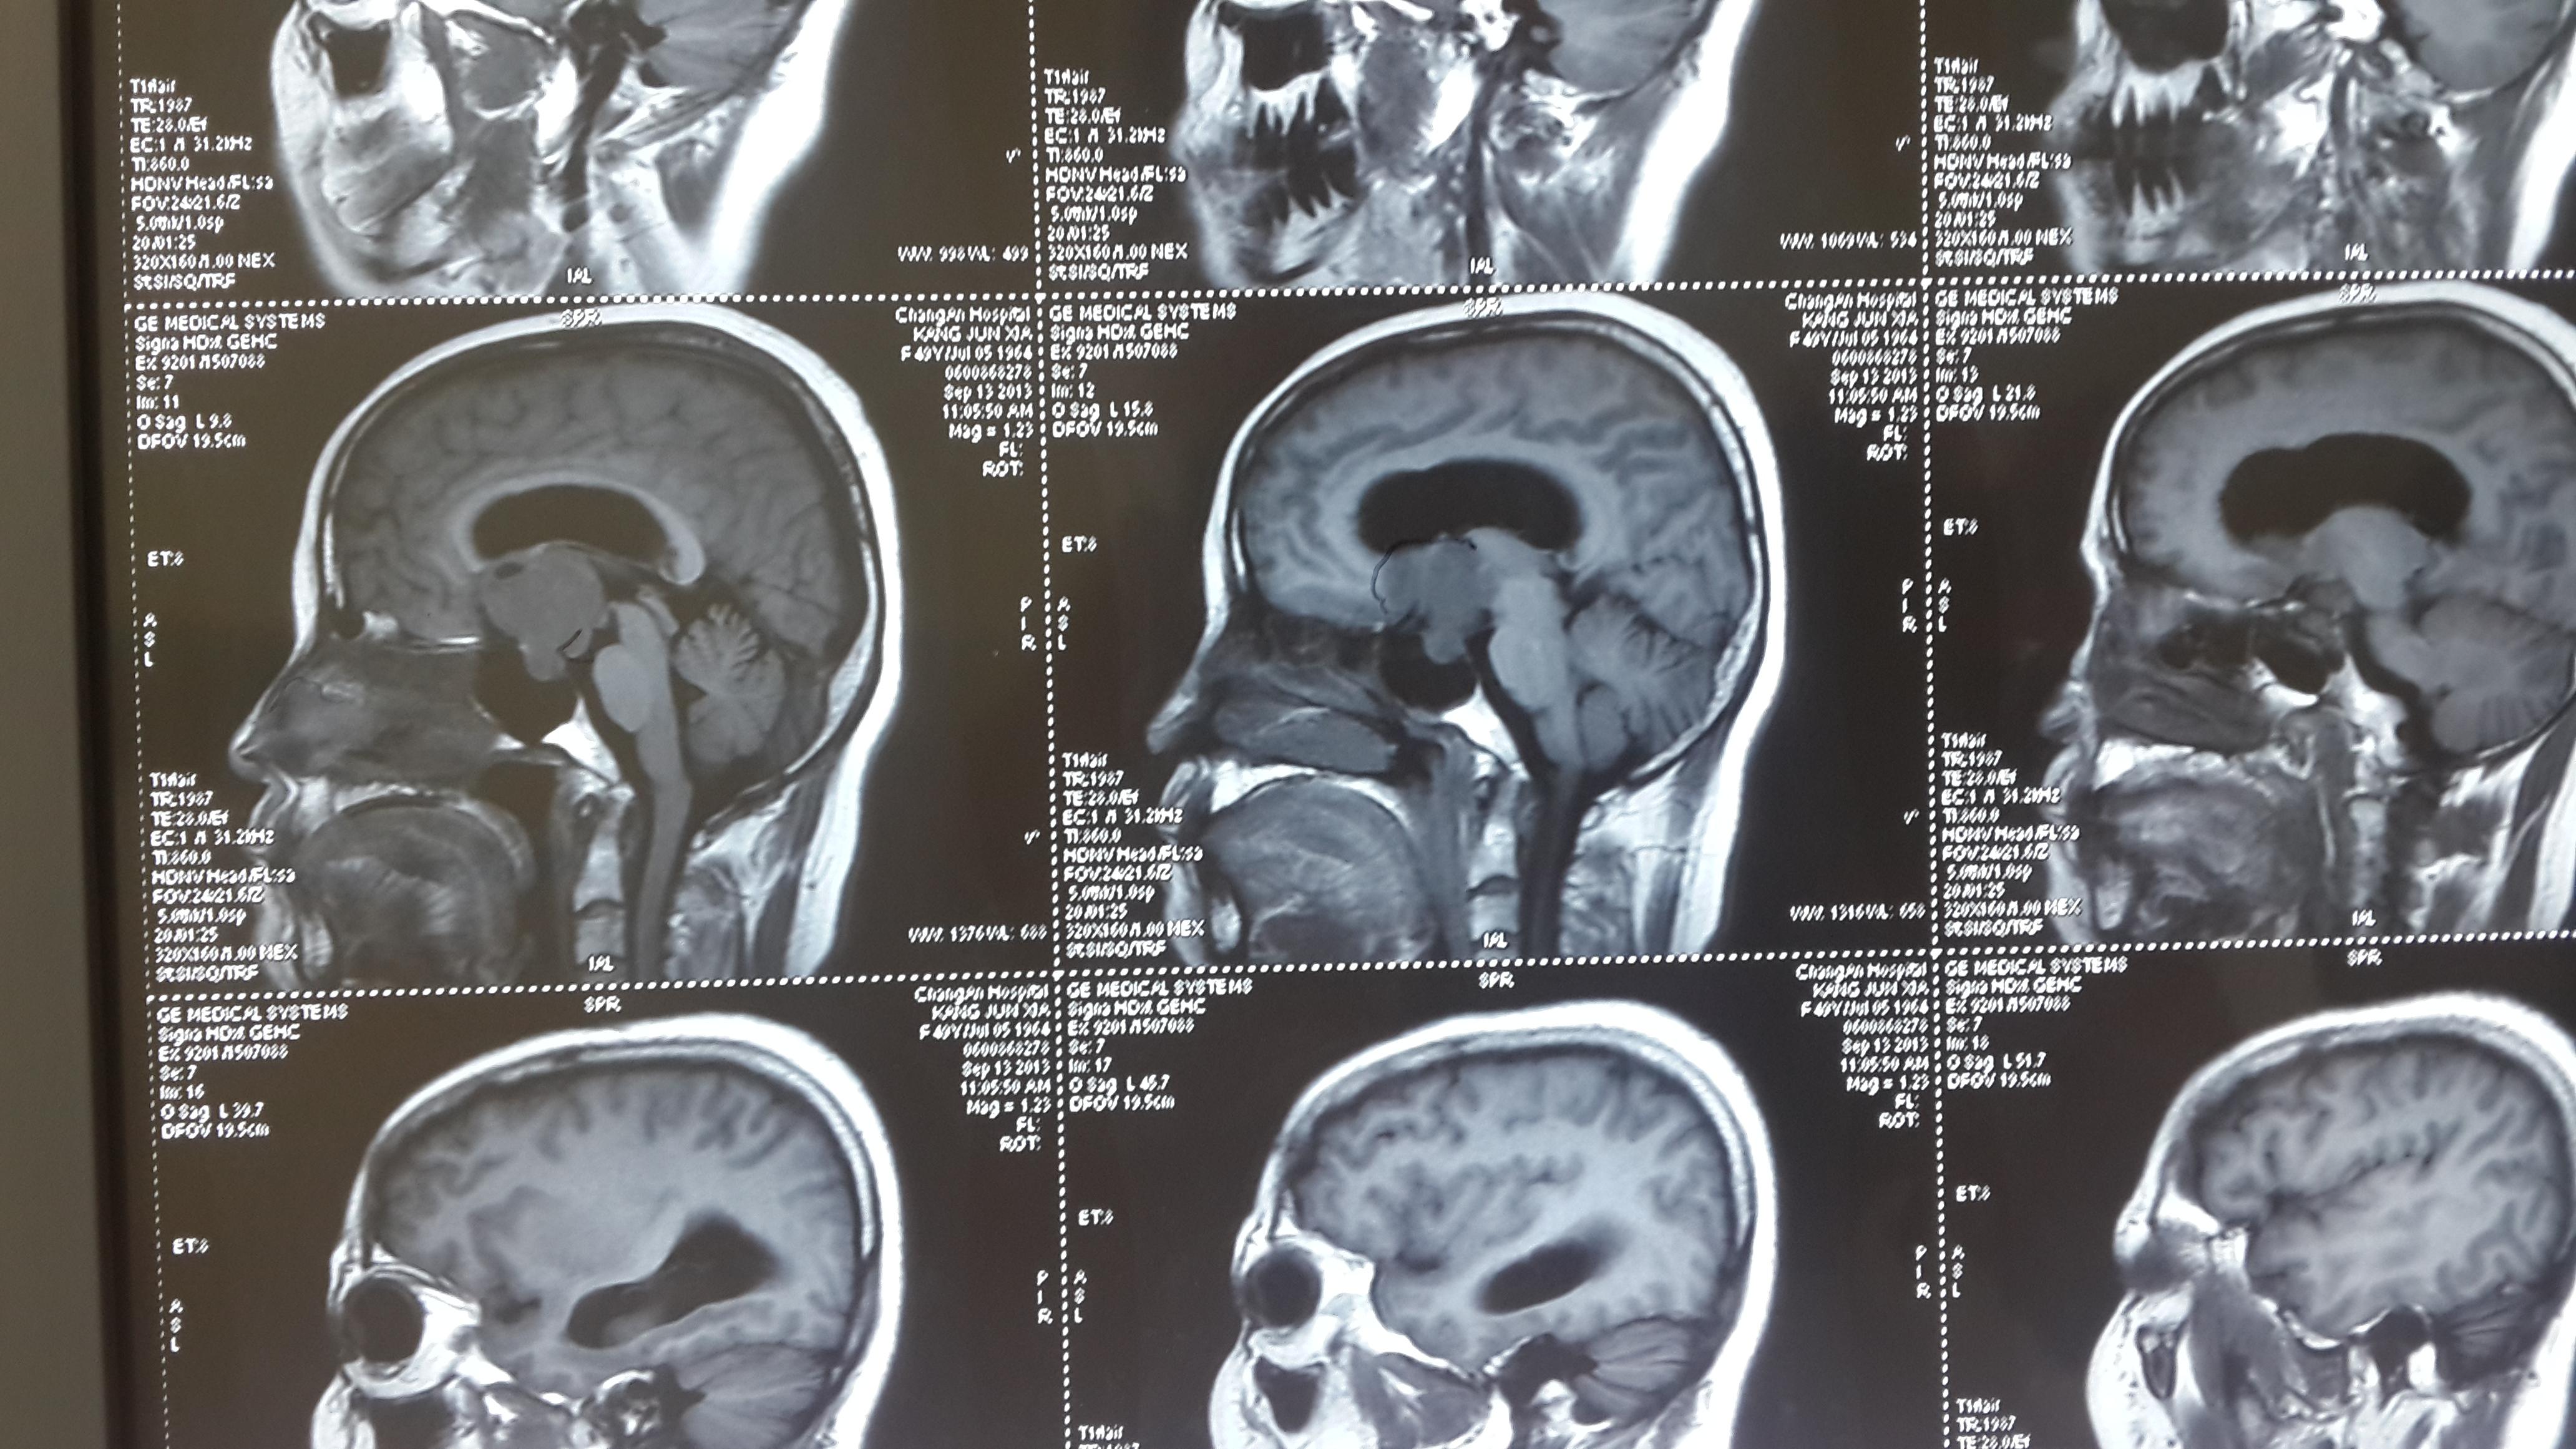 垂体腺瘤影像学表现及鉴别诊断 - 影像医学和核医学讨论版 -丁香园论坛